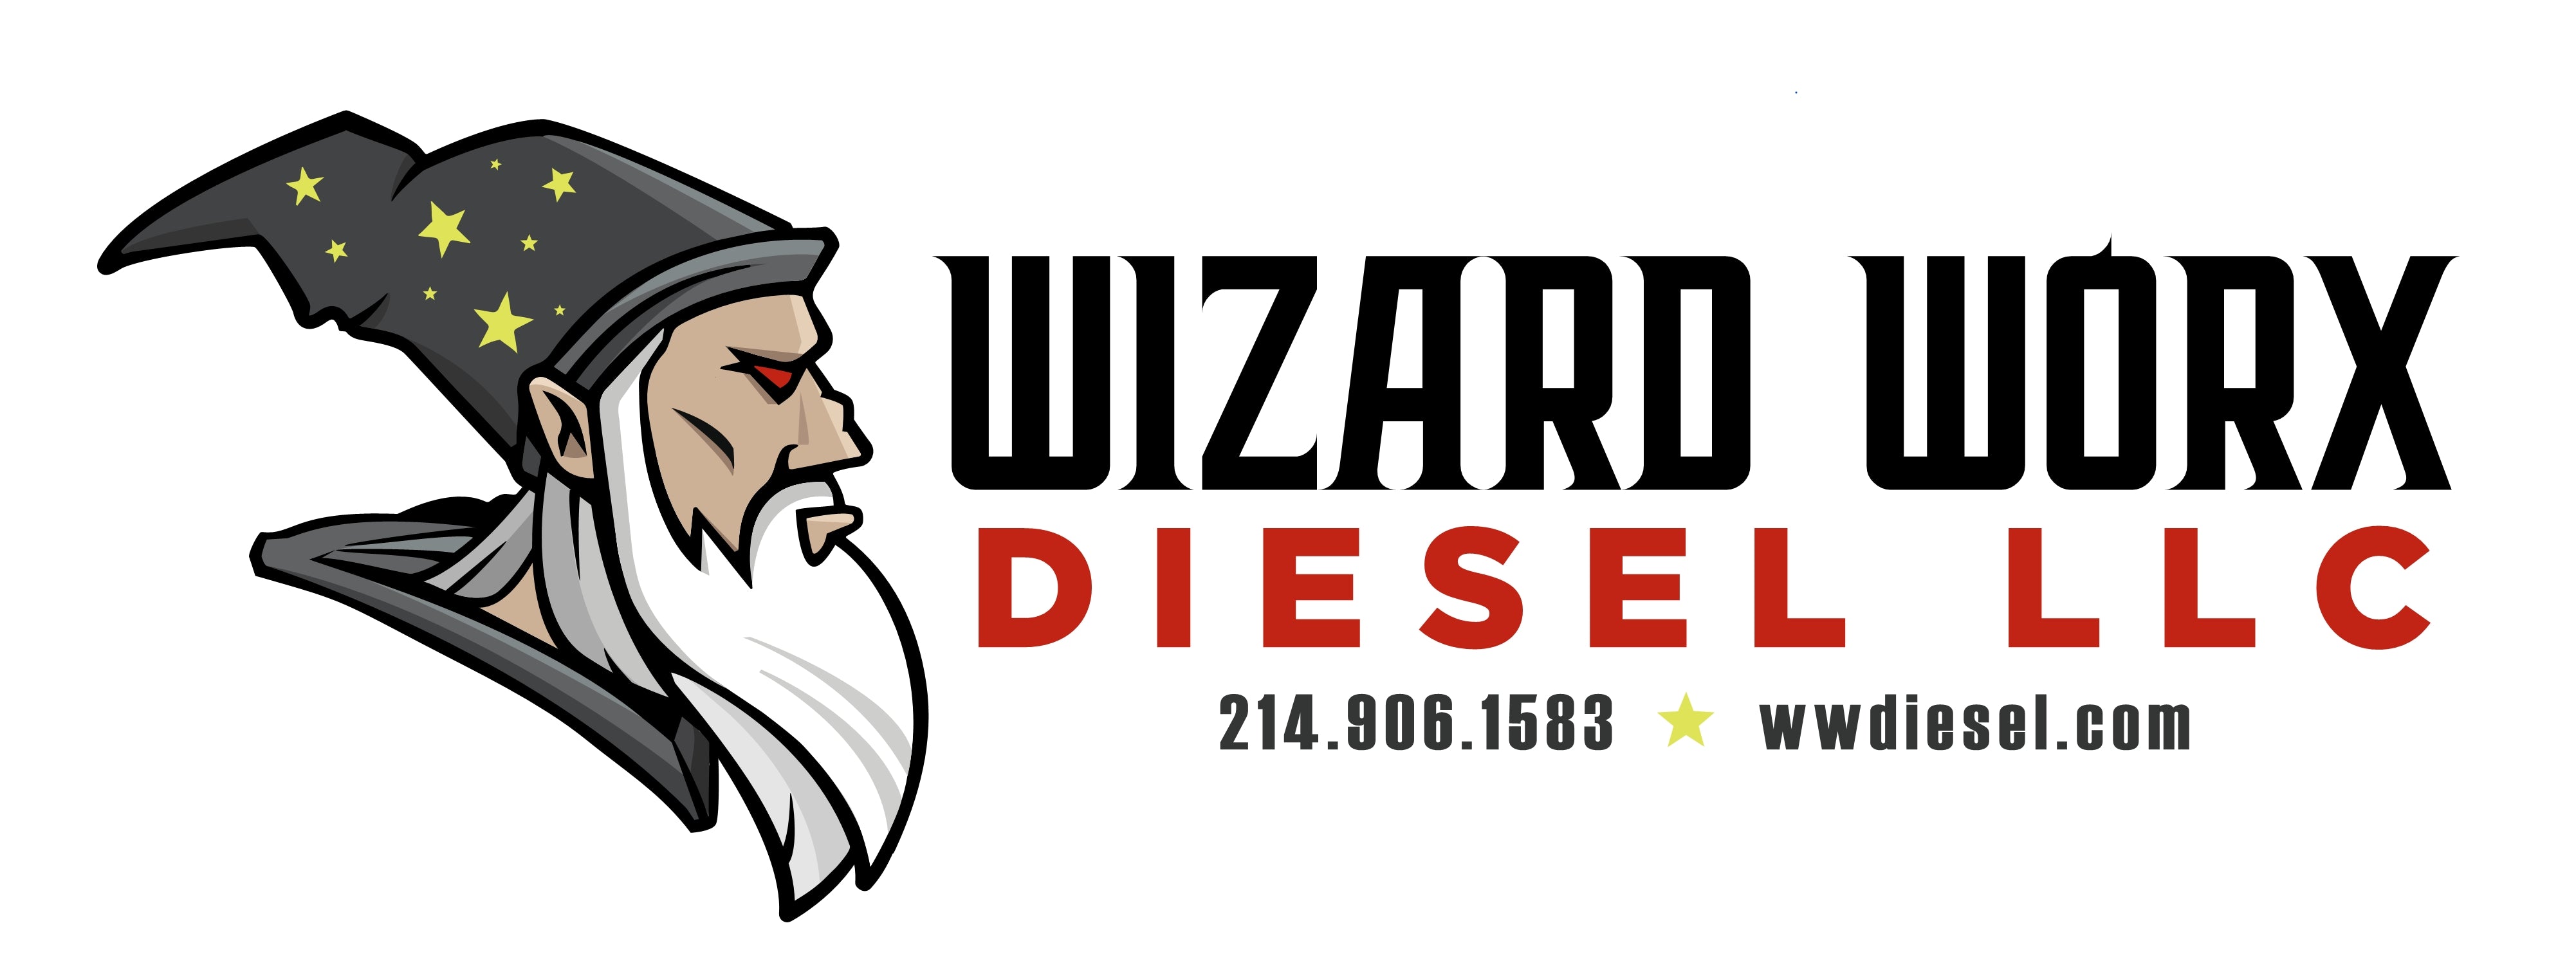 Wizard Worx Diesel